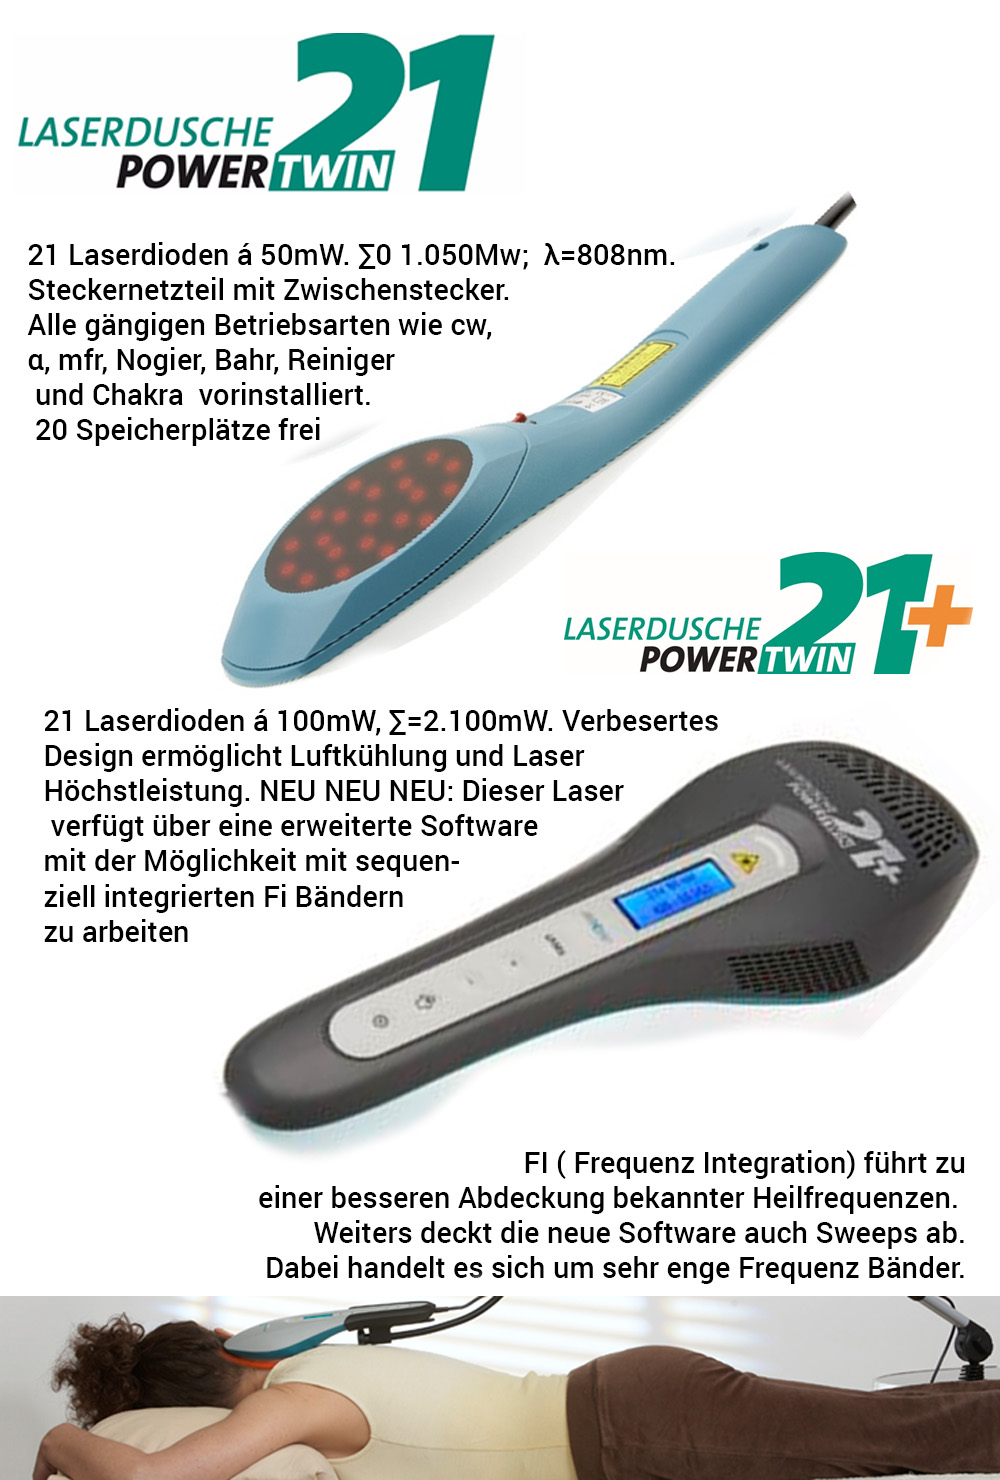 Details zu den Laserduschen PowerTwin21 und PowerTwin21plus